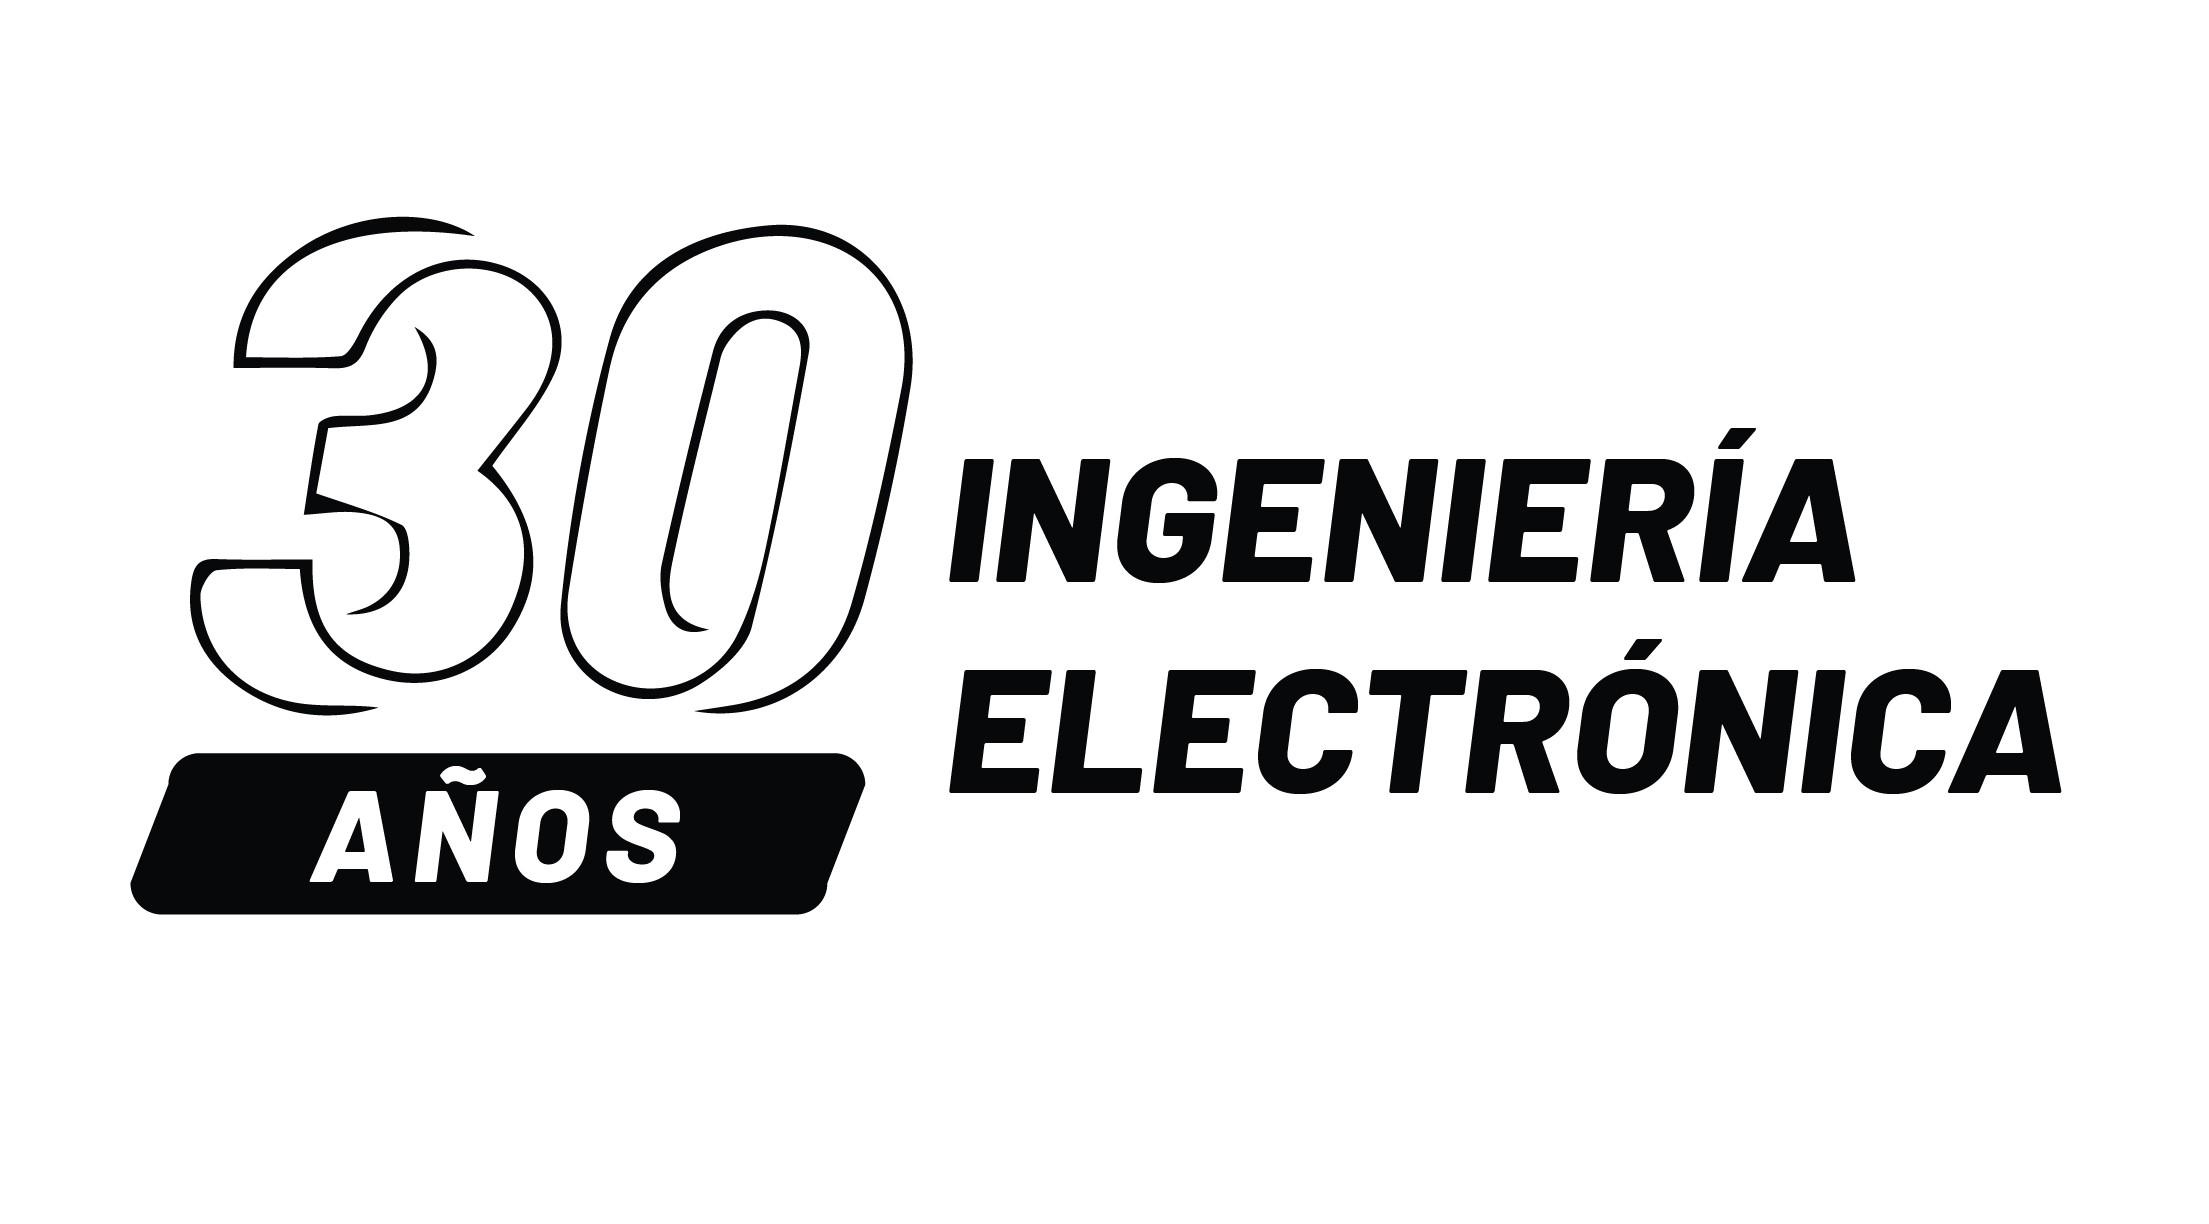 30 años de ingenieria electronica